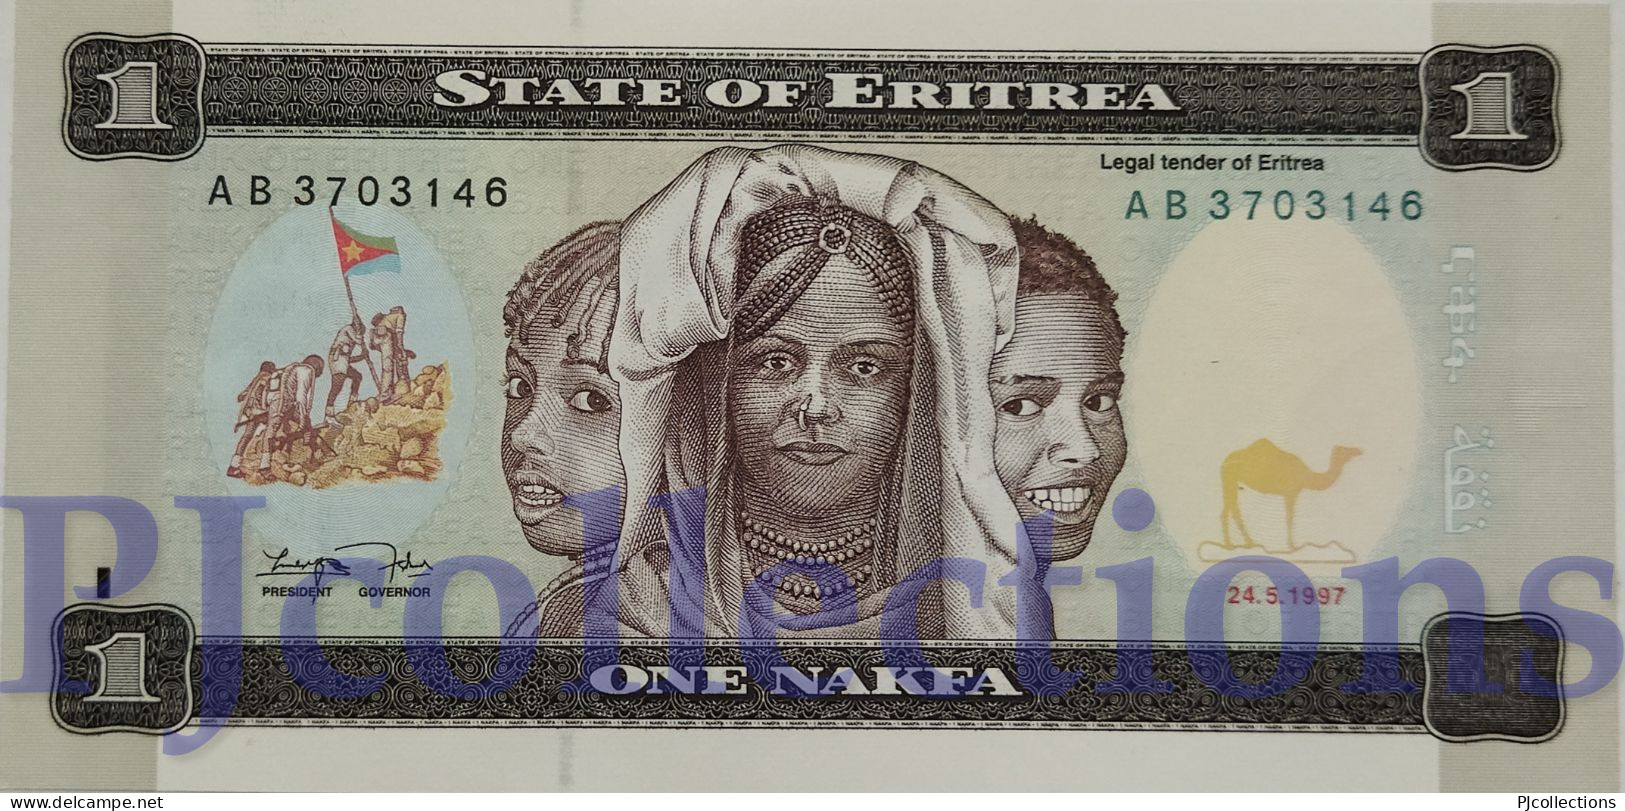 LOT ERITREA 1 NAKFA 1997 PICK 1 UNC X 5 PCS - Eritrea